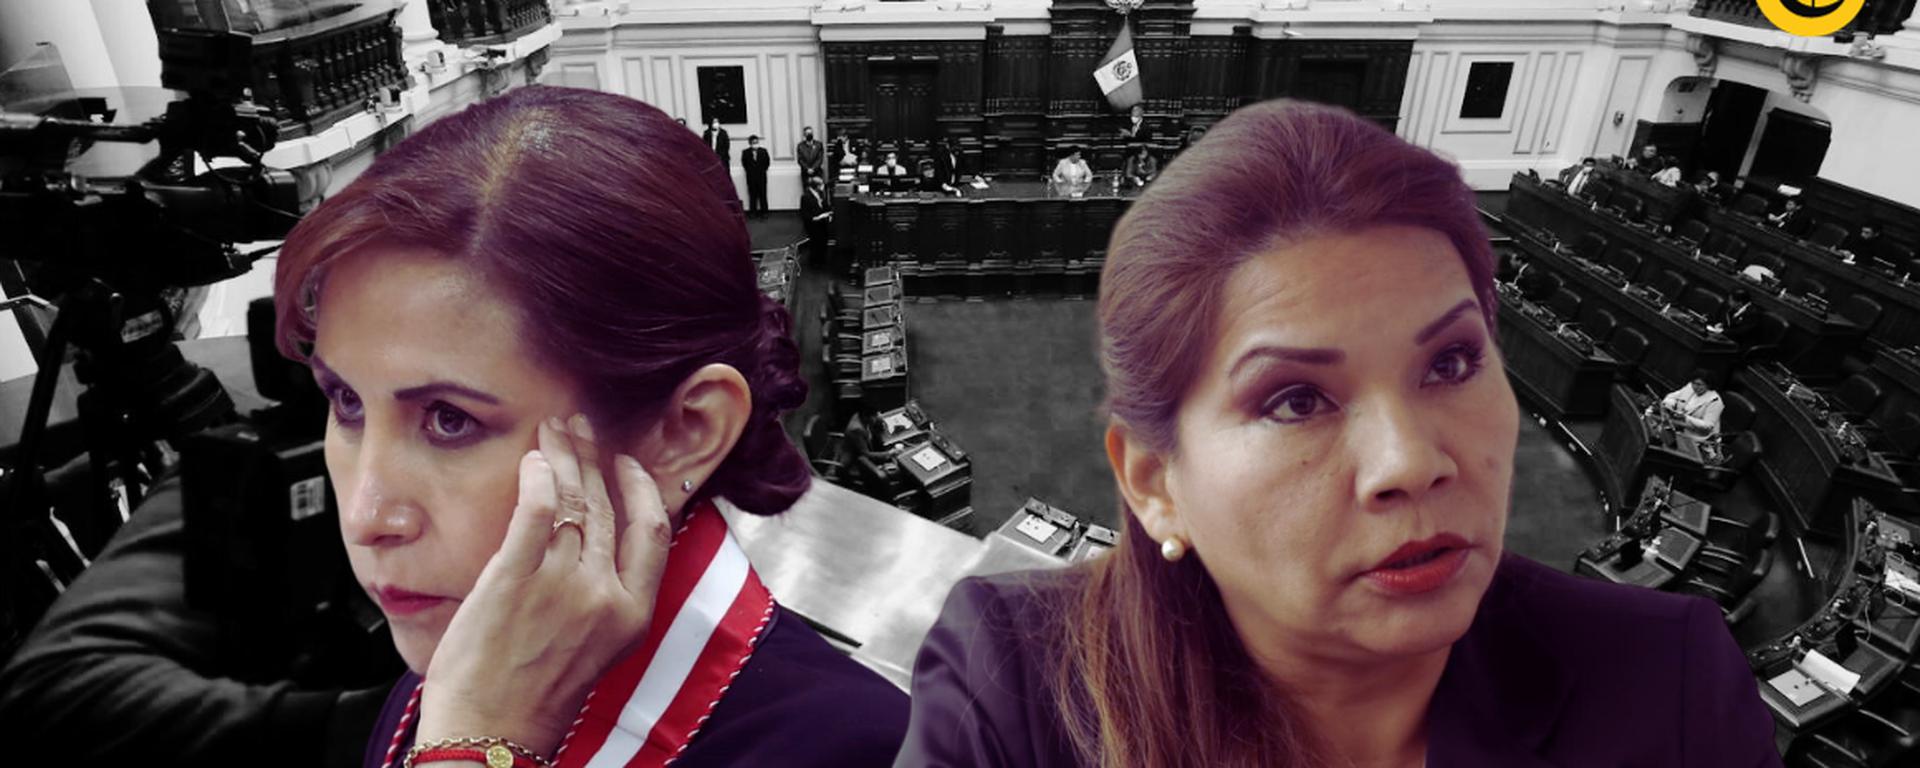 Obstaculización y peligro de fuga: ¿Cuáles son los elementos del informe que pedía a Patricia Benavides la detención de “Los Niños”?